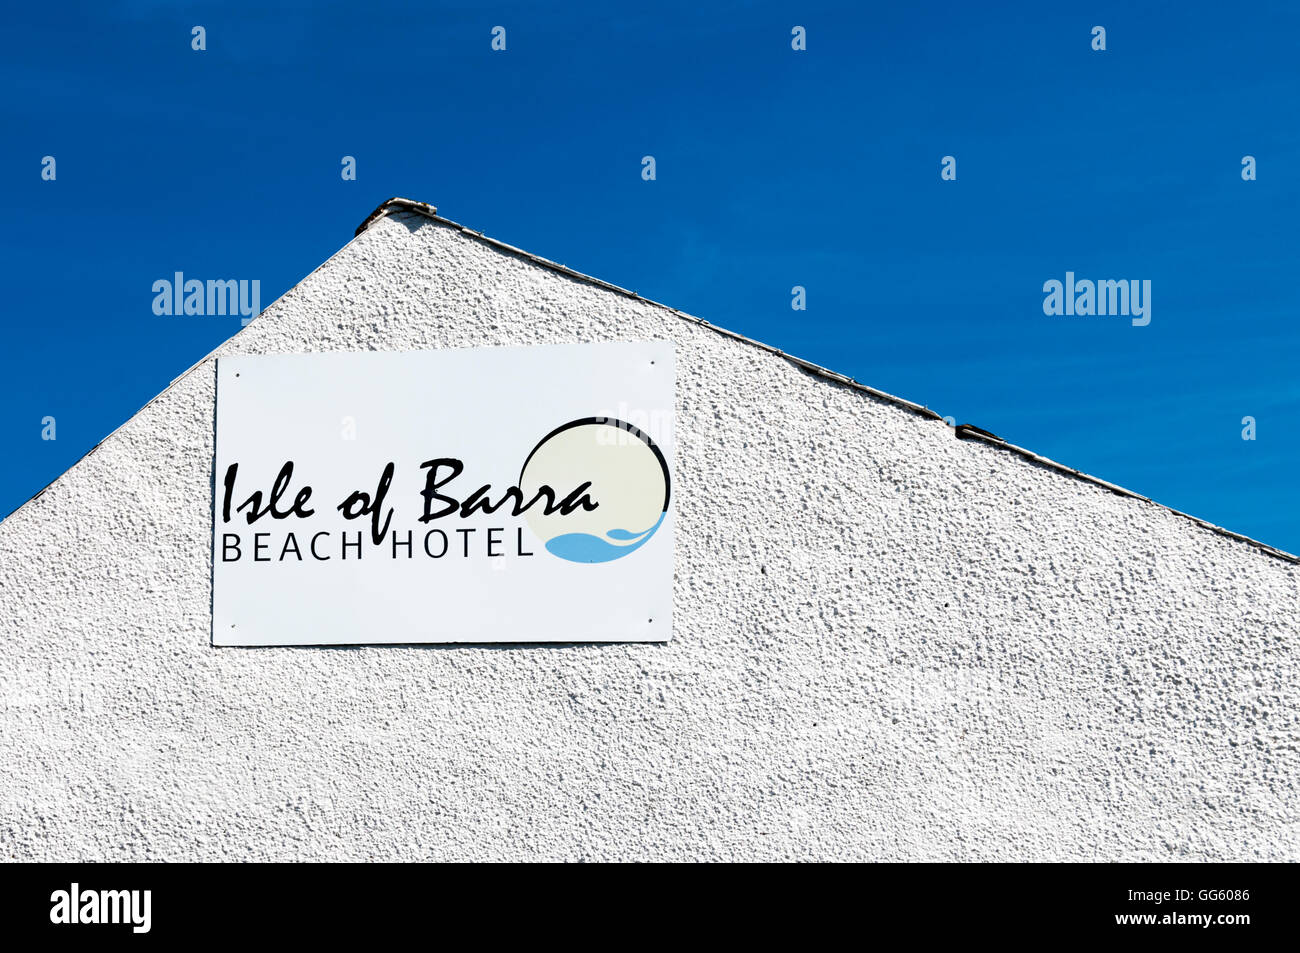 Melden Sie sich für The Isle of Barra Beach Hotel auf Bàgh Halaman auf der Insel Barra in den äußeren Hebriden. Stockfoto